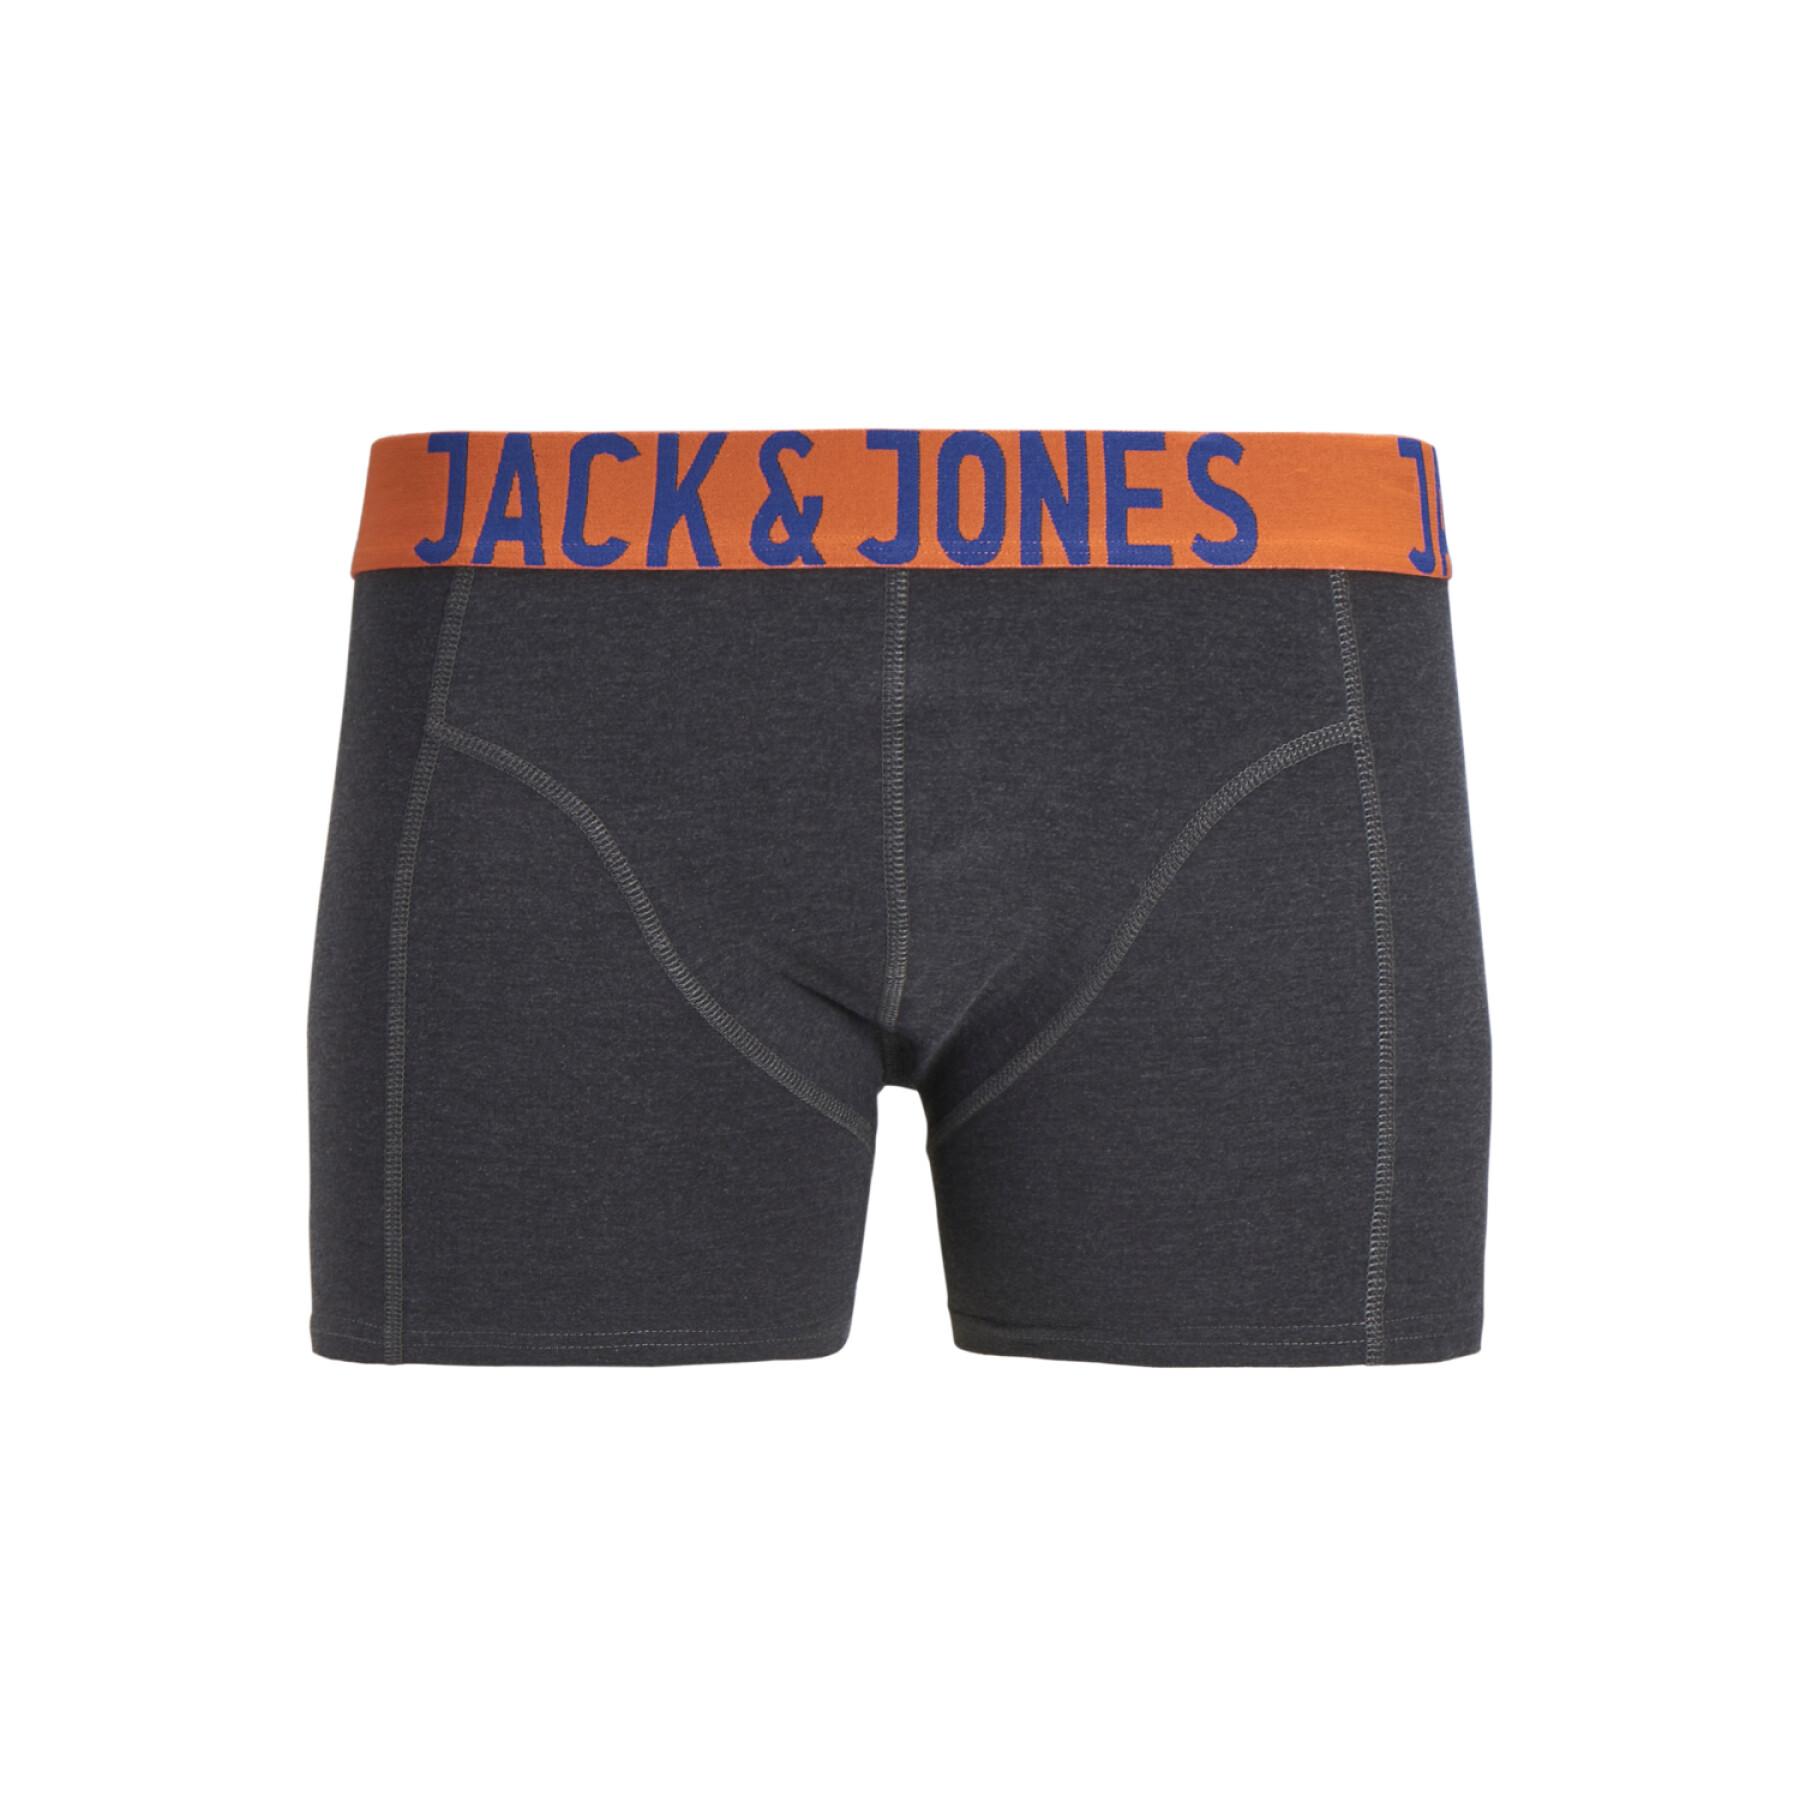 Set van 3 boxers voor kinderen Jack & Jones Crazy Solid